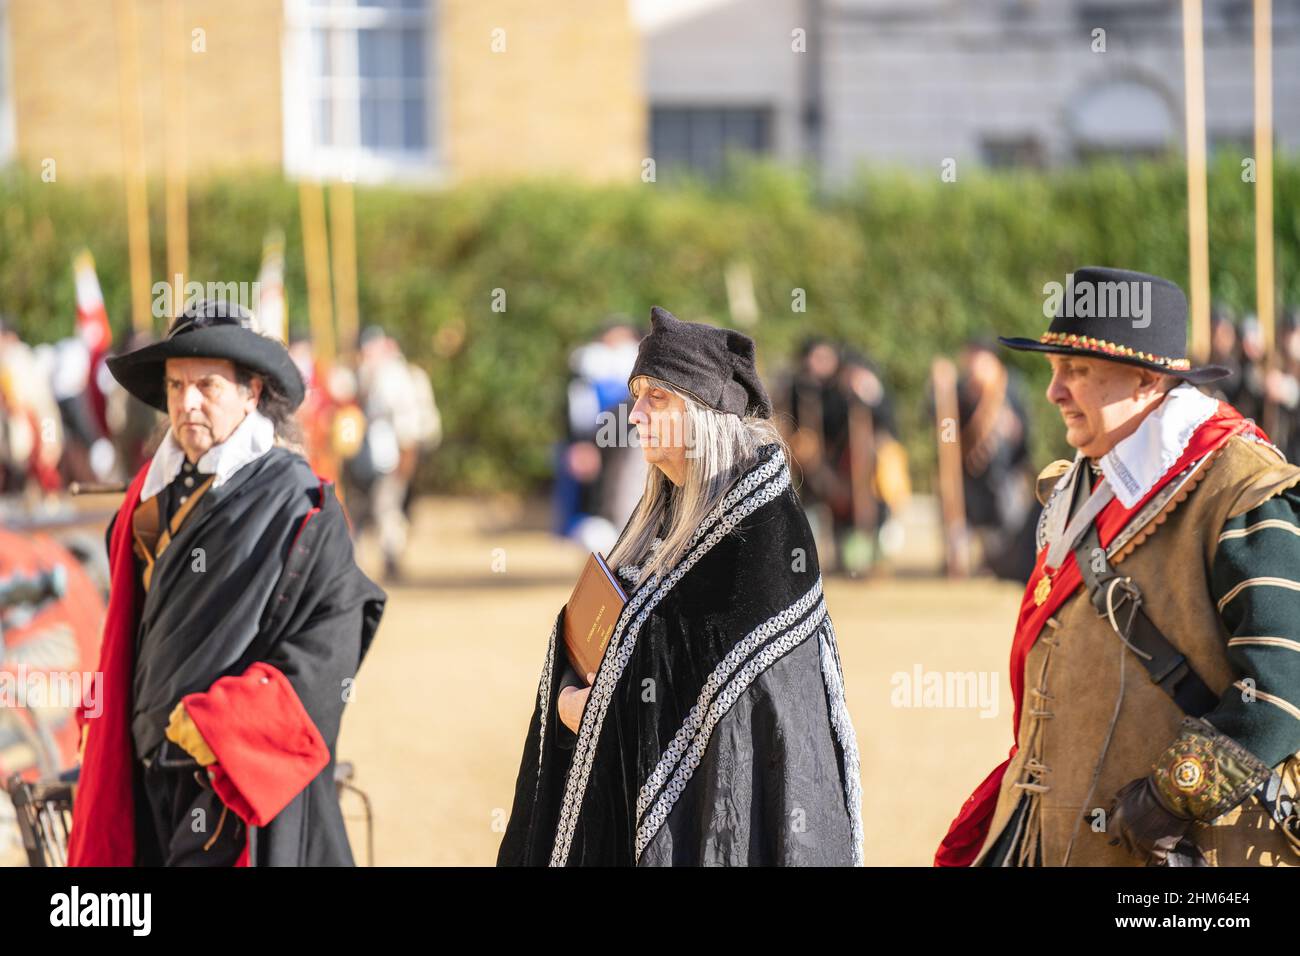 L'Esercito dei Re, parte della Società della Guerra civile Inglese. 50th anniversario della parata dell'Esercito dei Re. Londra, 30 gennaio 2022 Foto Stock